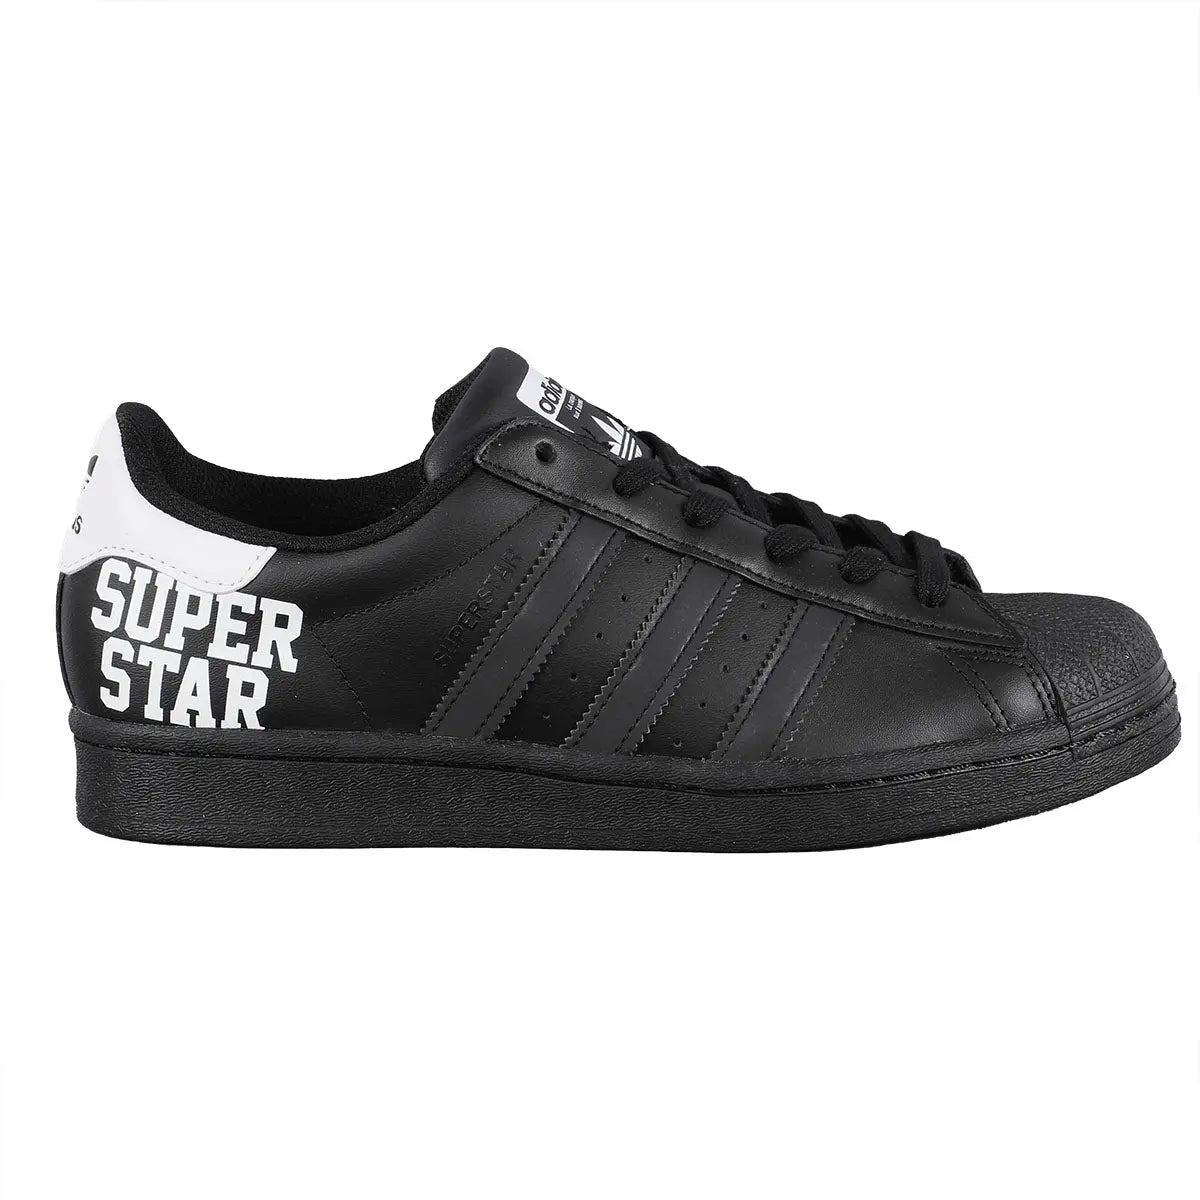 Men's shoes adidas Originals Superstar Core Black/ FtwWhite/ Core Black